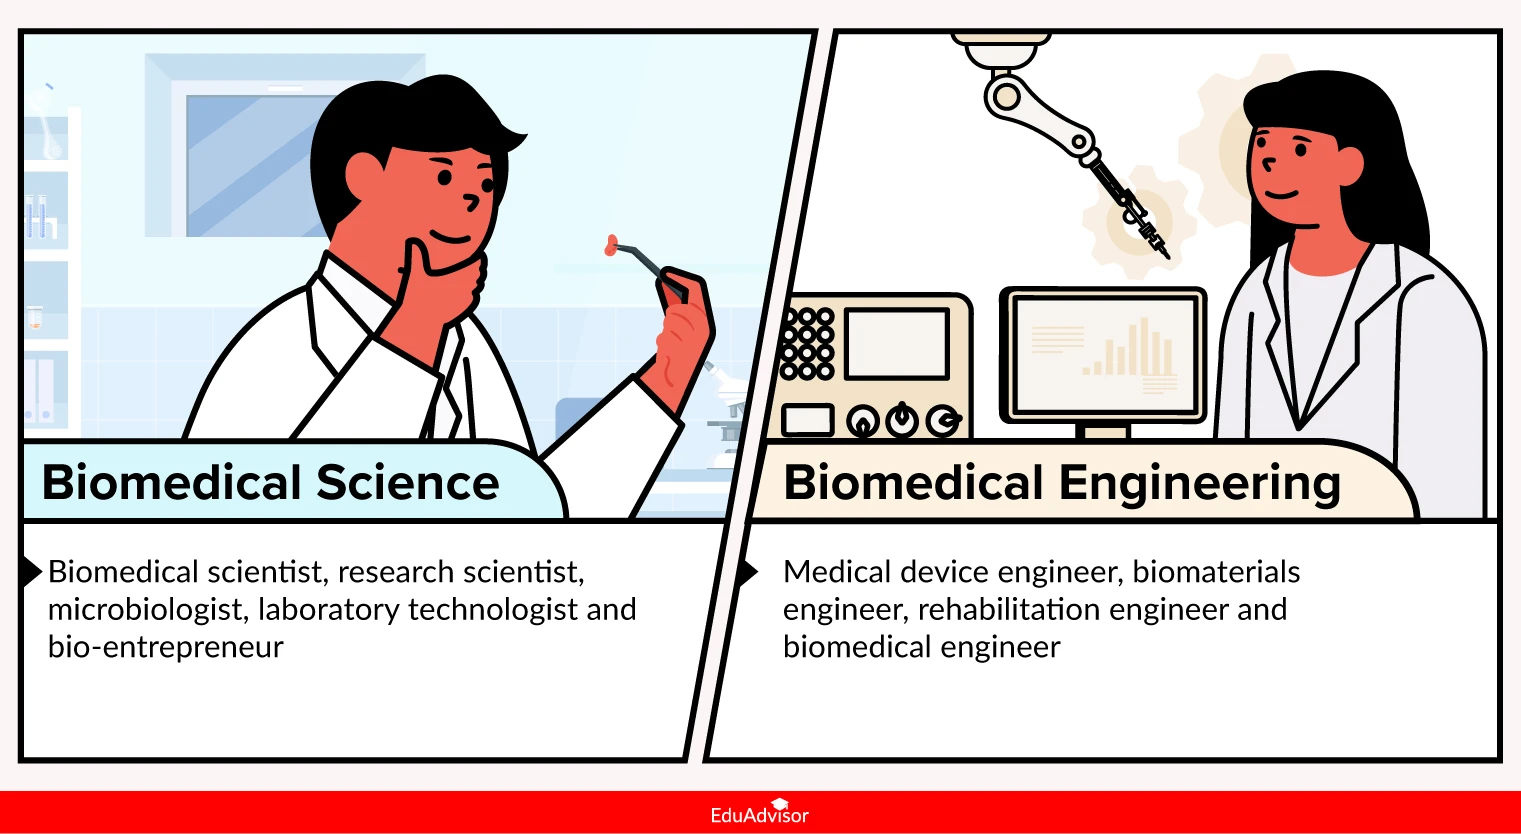 biomed-science-vs-biomed-engineering-career